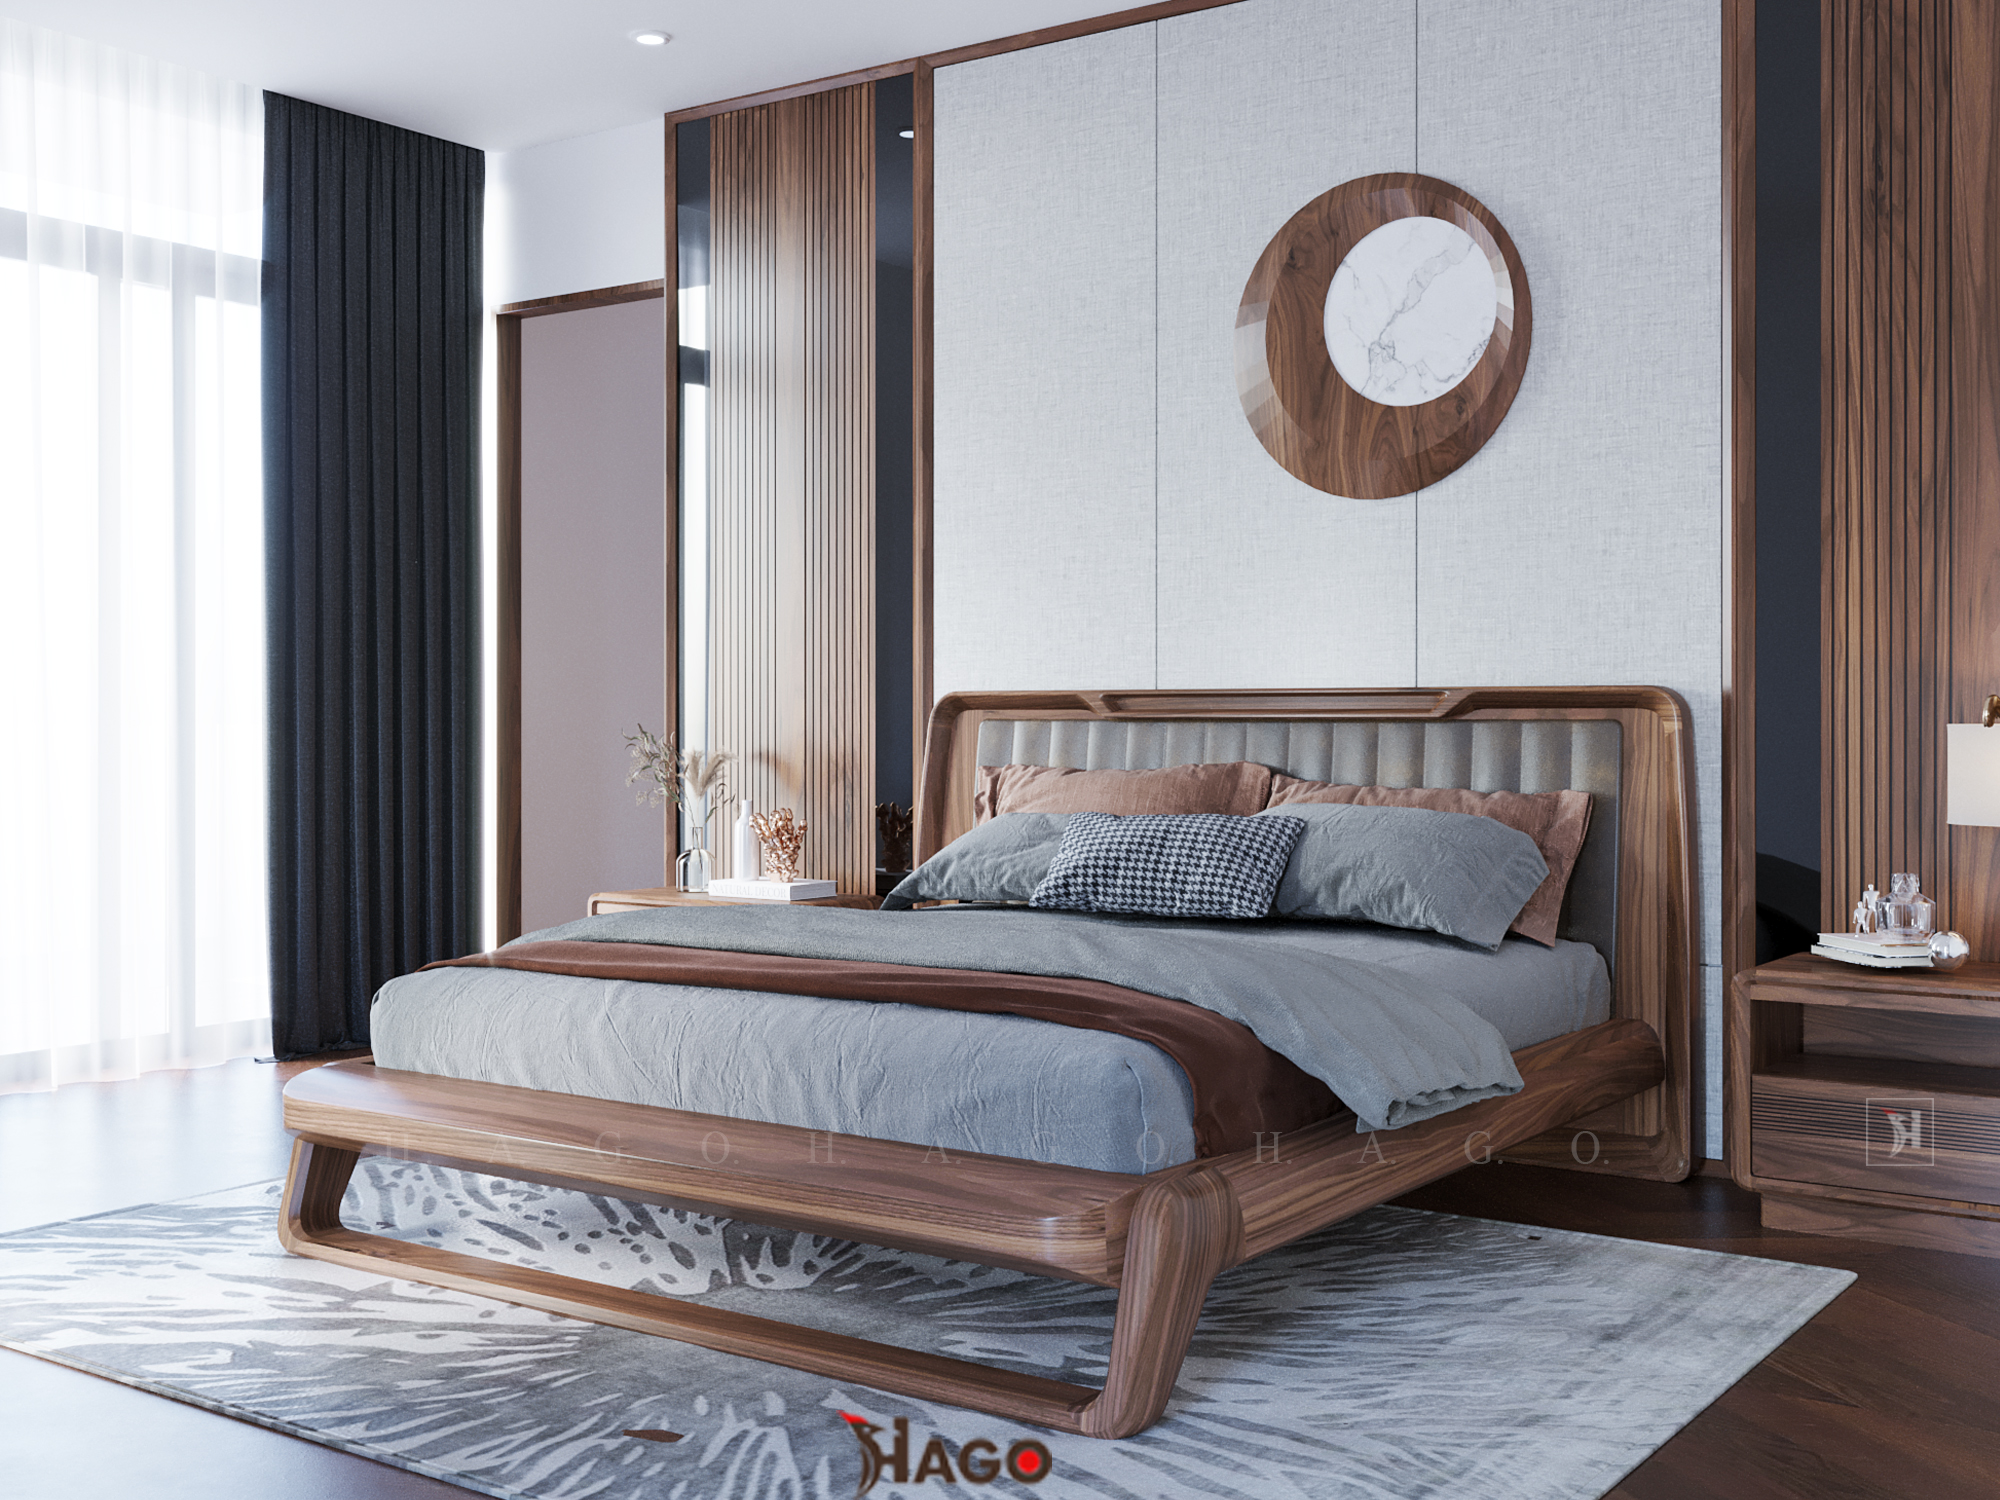 Giường ngủ hiện đại gỗ óc chó đã đưa thiết kế nội thất lên một tầm cao mới trong năm